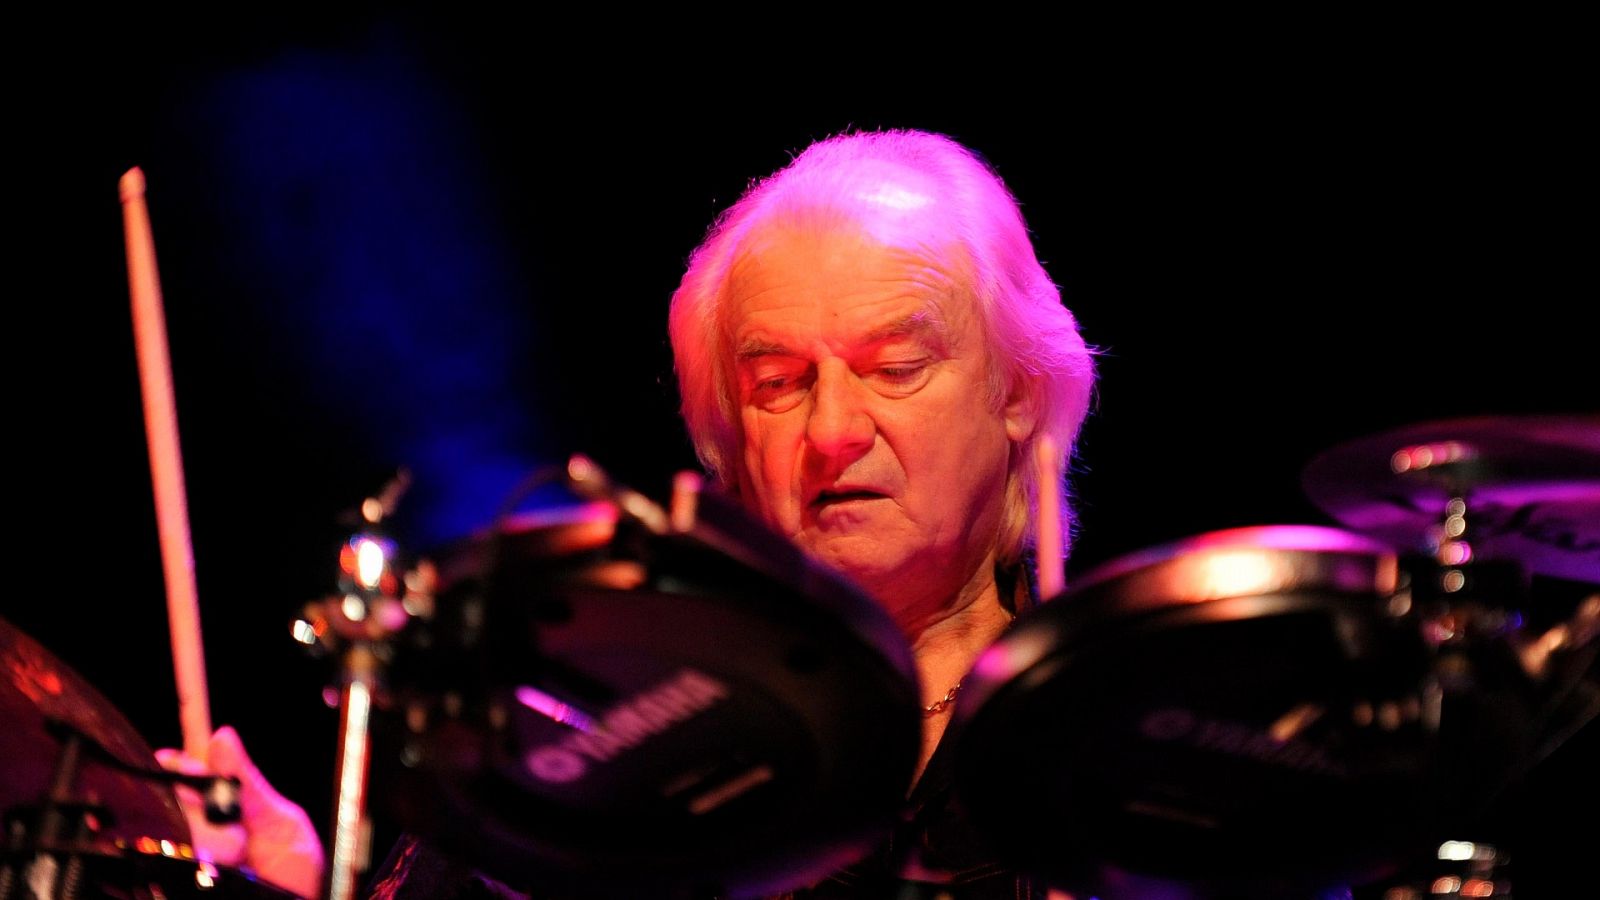 El batería Alan White de la banda británica de rock Yes durante un concierto Viena en 2011.